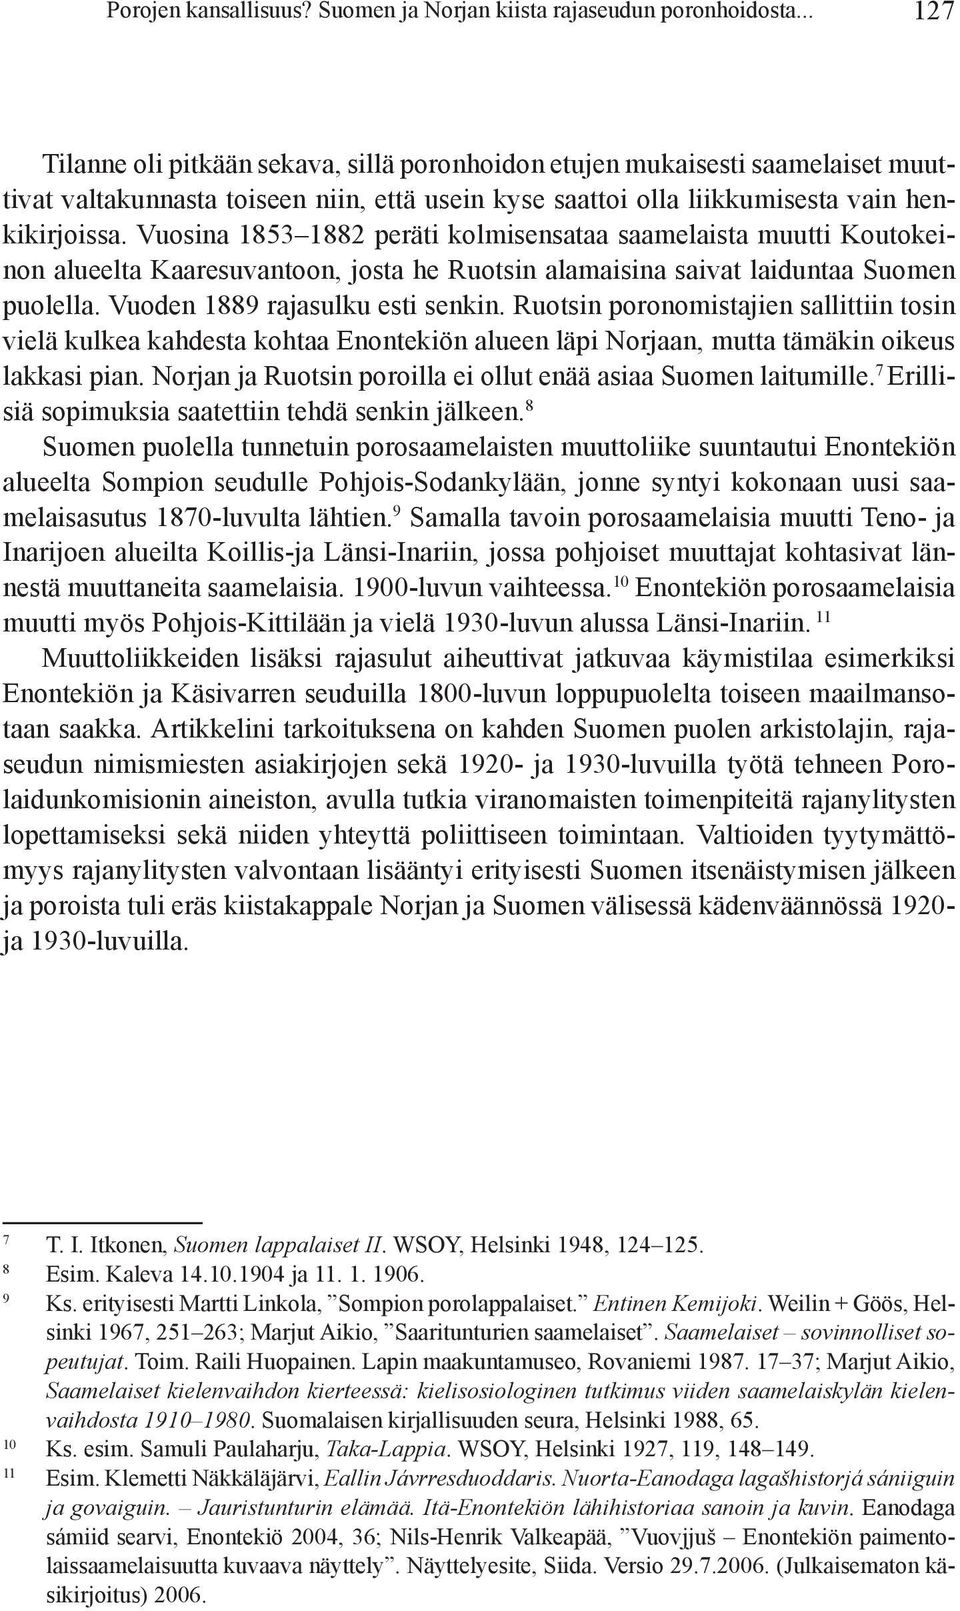 Vuo sina 1853 1882 peräti kolmisensataa saamelaista muutti Koutokeinon alueelta Kaare su van toon, josta he Ruotsin alamaisina saivat laiduntaa Suomen puolella. Vuoden 1889 rajasulku esti senkin.